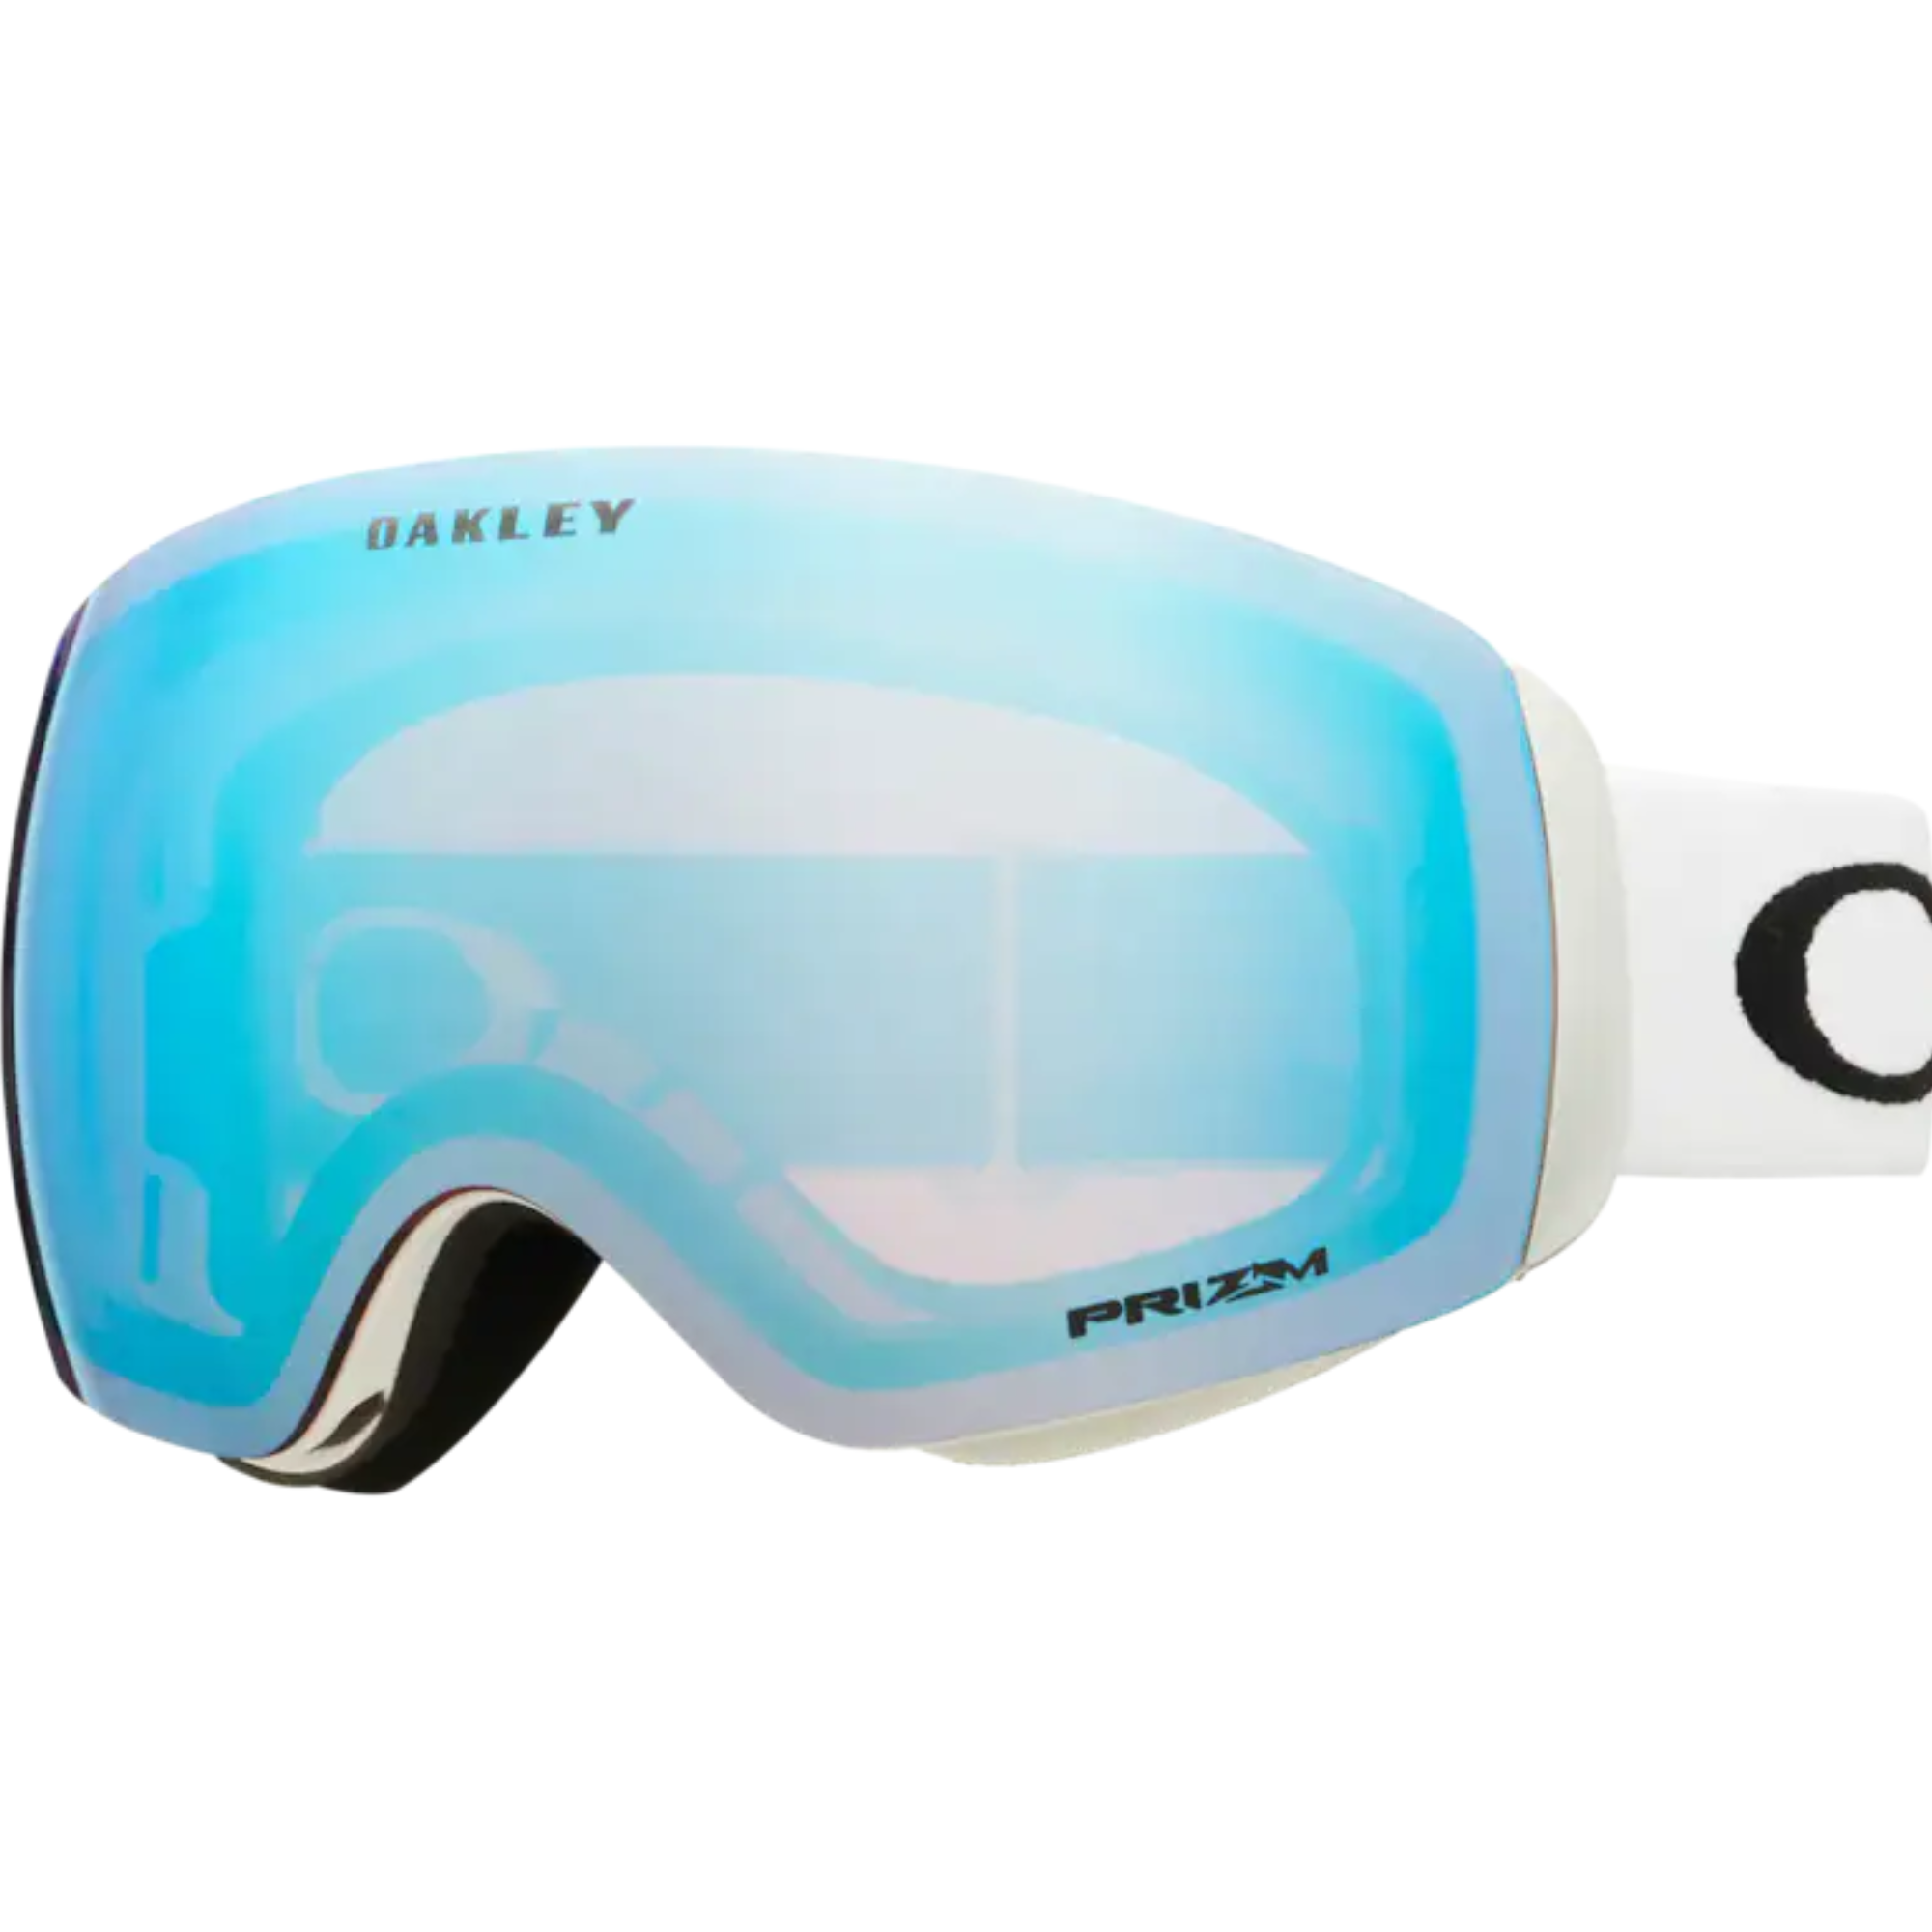 Oakley - Flight Deck M Goggle - Matte White / Prizm Sapphire